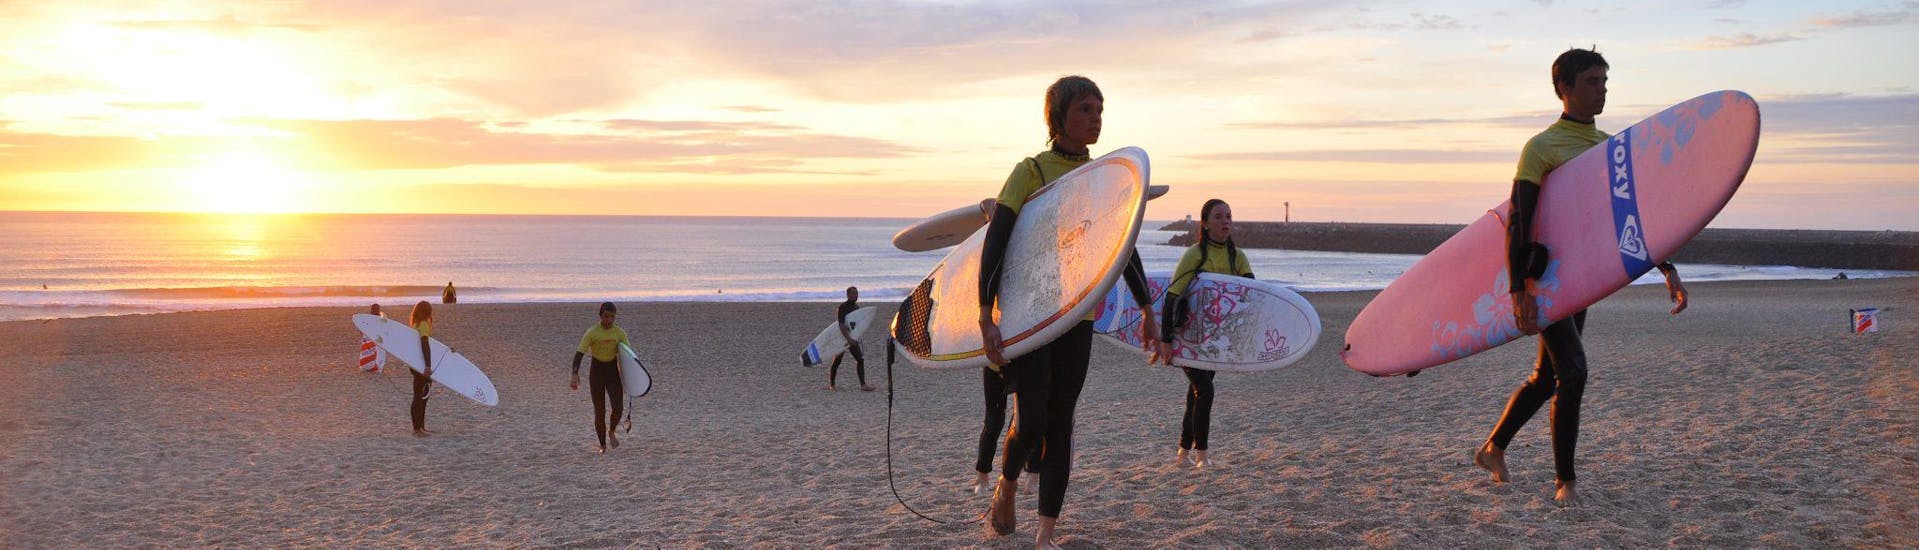 Een groep jonge surfers op het strand bij zonsondergang.